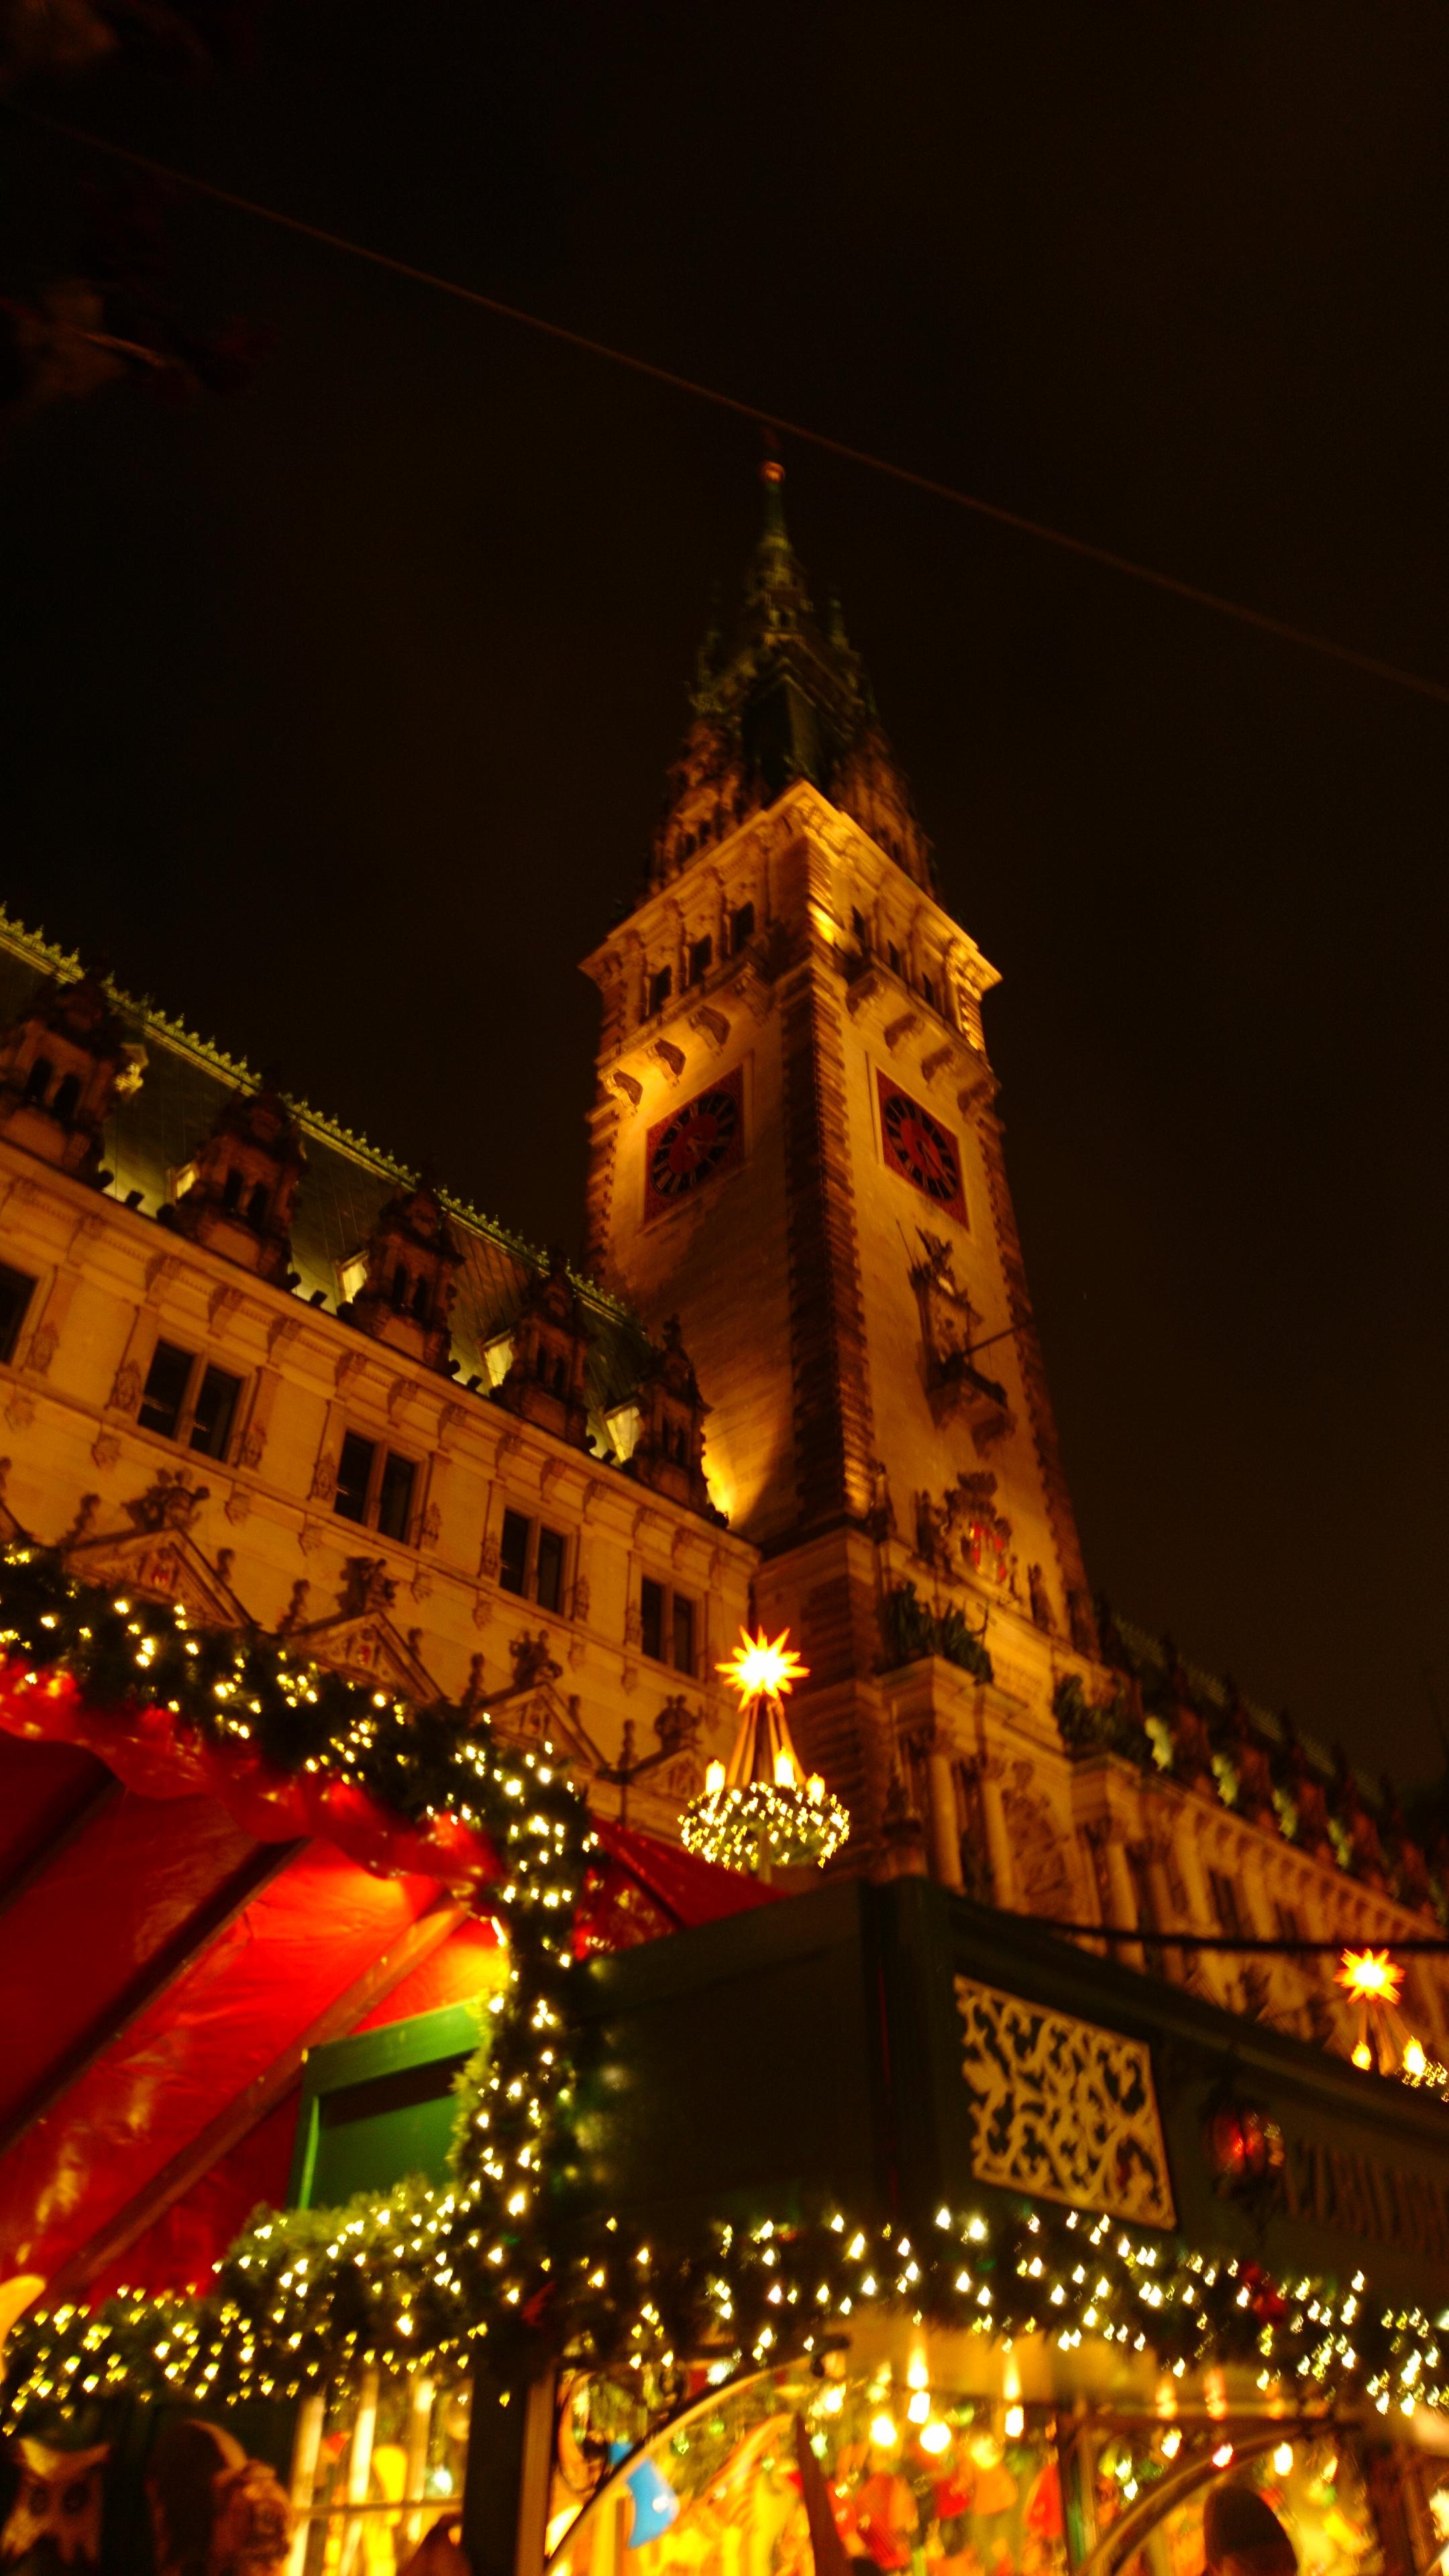 Letztes Jahr am 1ten Adven war ich auf dem wunderschönen historischen #Weihnachtsmarkt in #Hamburg 🎄